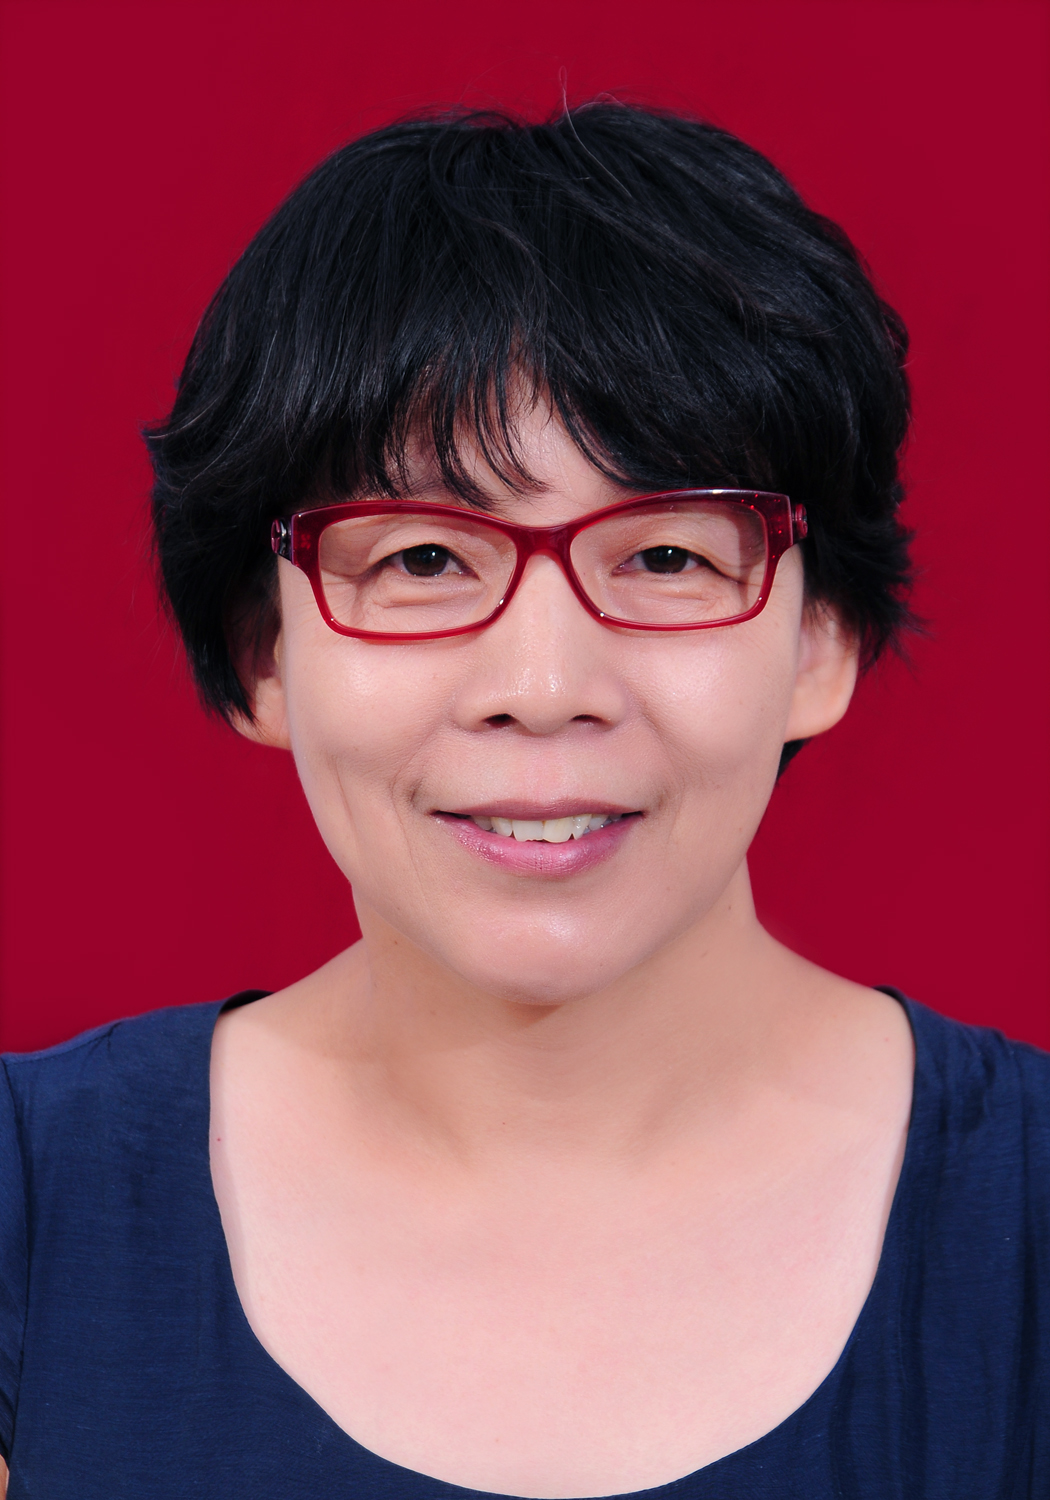 王小萍教授王小萍,女,1962年生